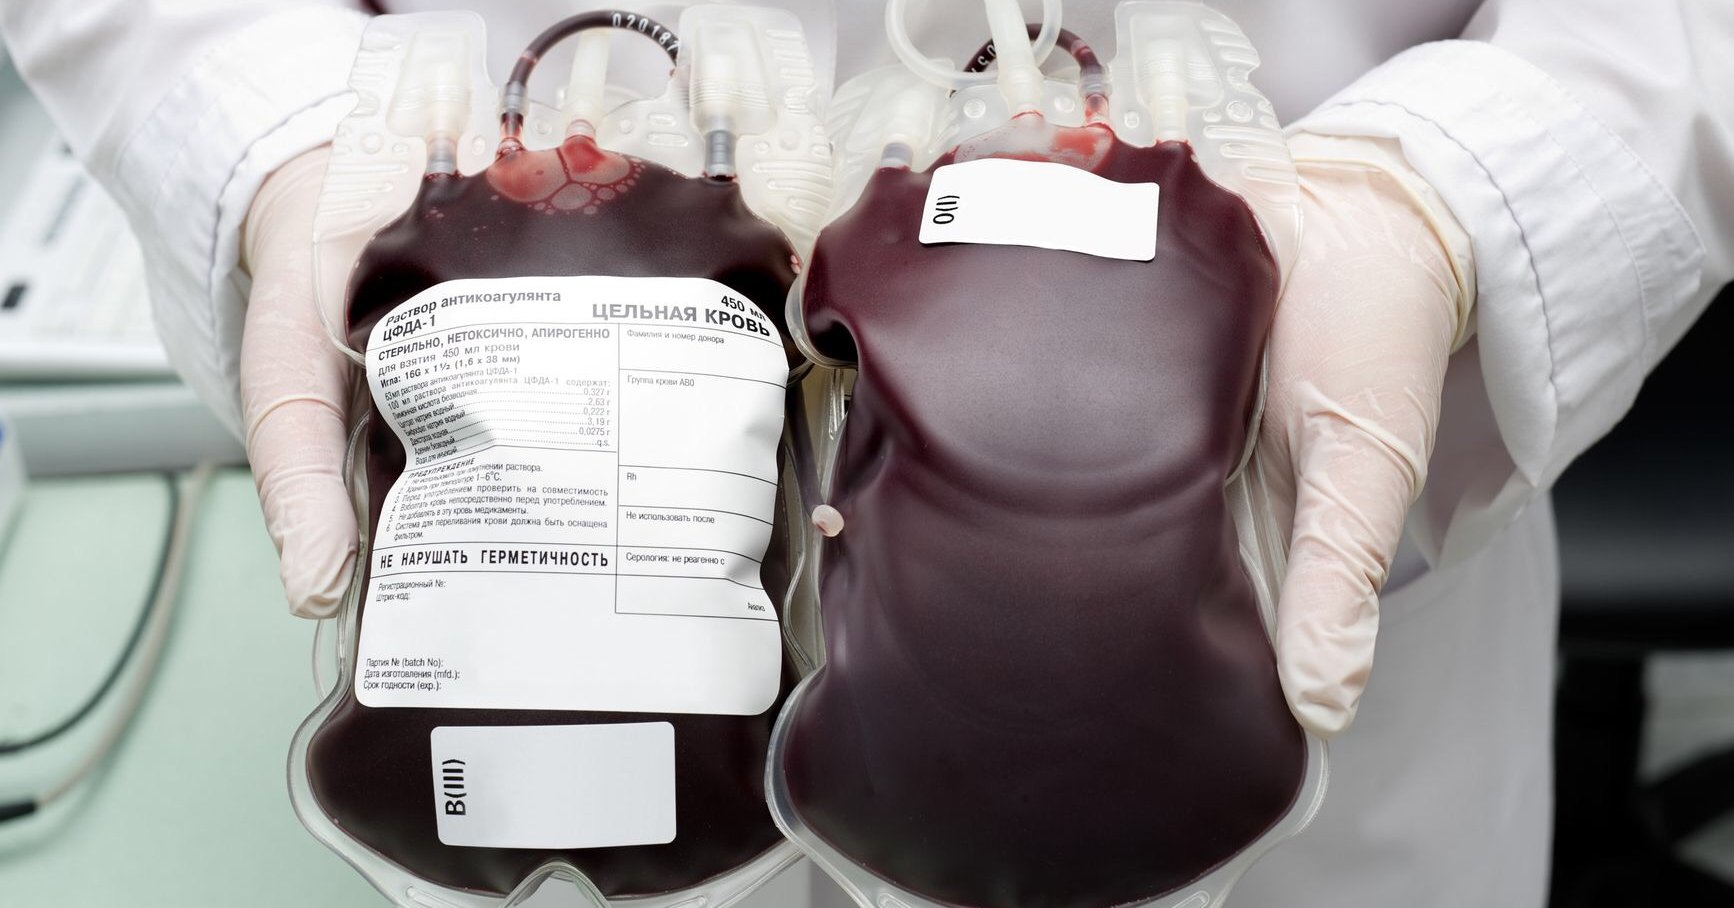 3 литра крови. Цельная кровь. Переливание крови при гемоглобине.